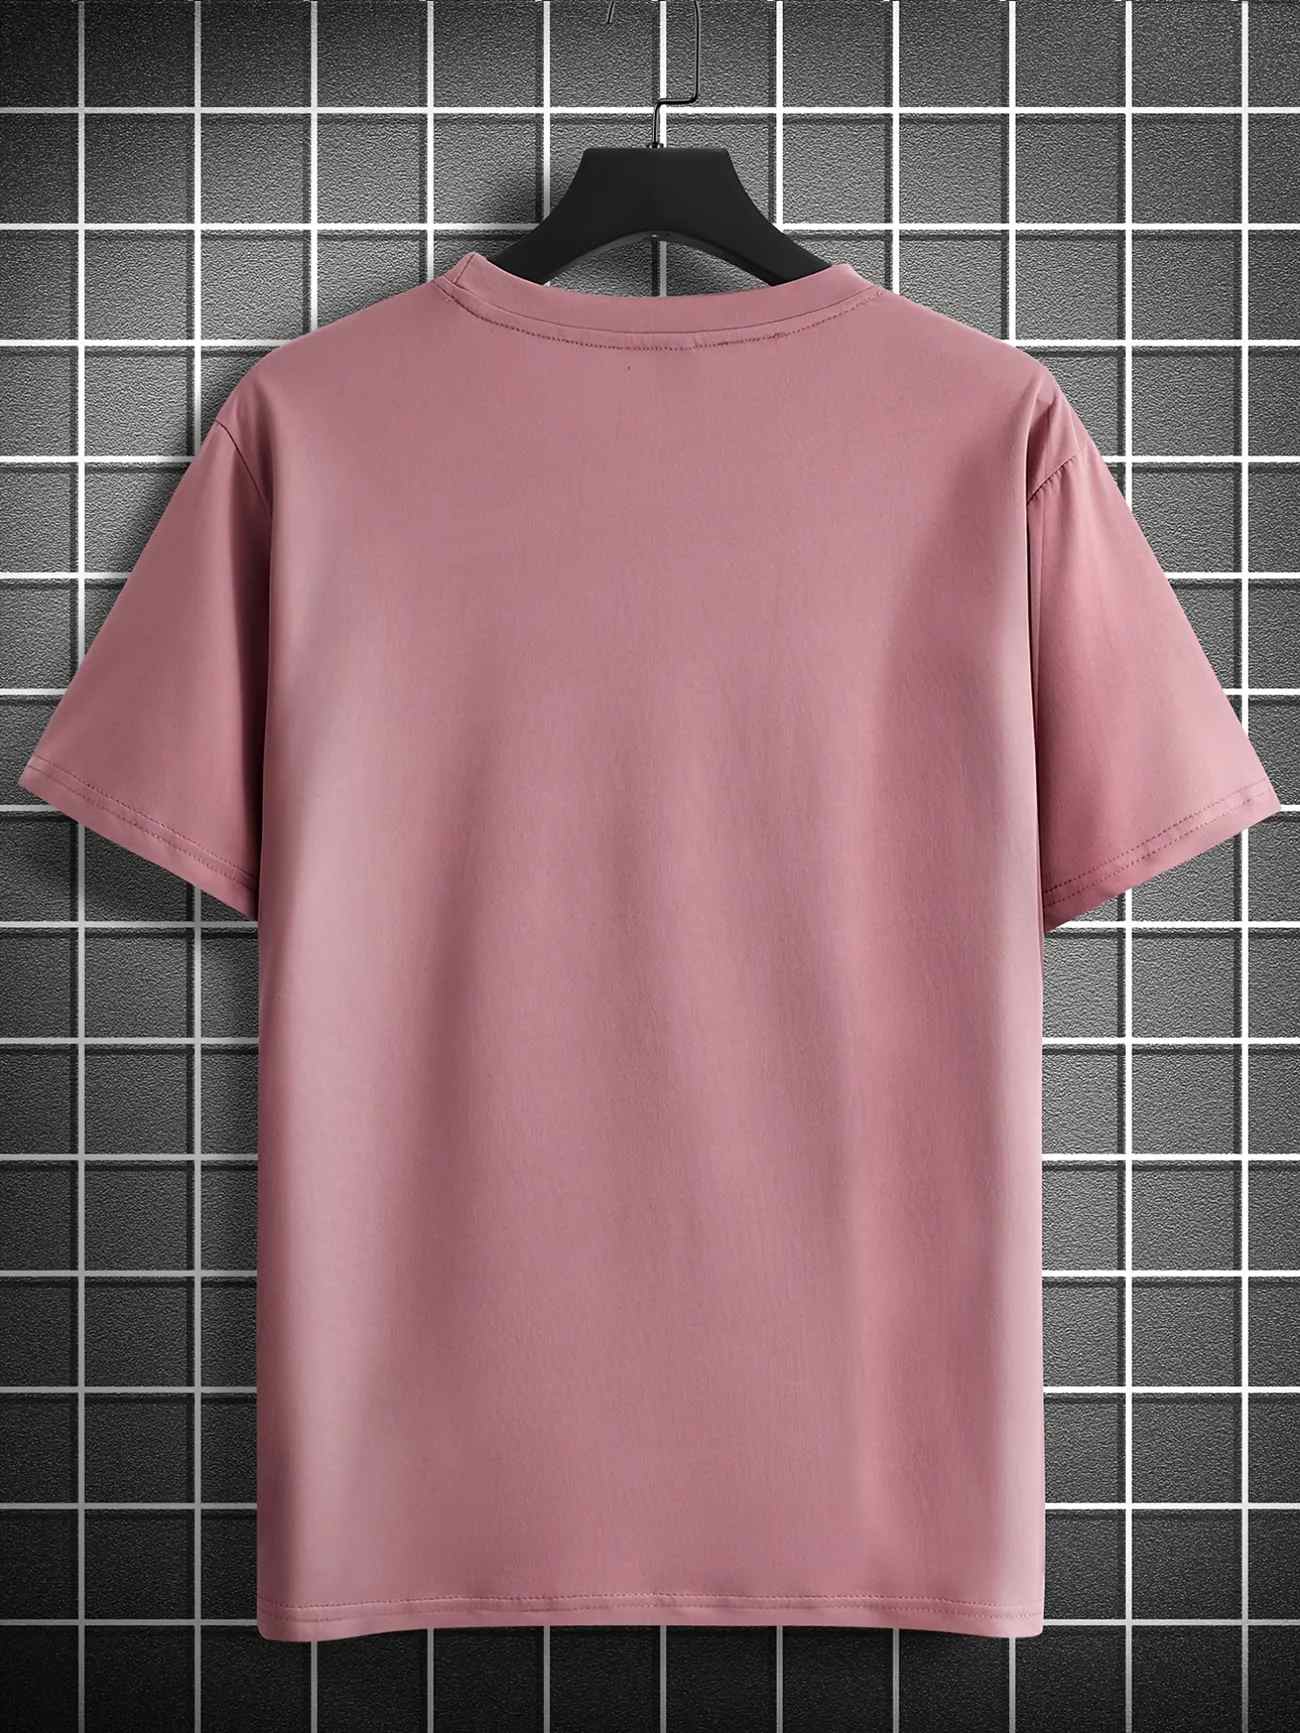 Mens Cotton Sticker Printed T-Shirt TTMPS80 - Pink